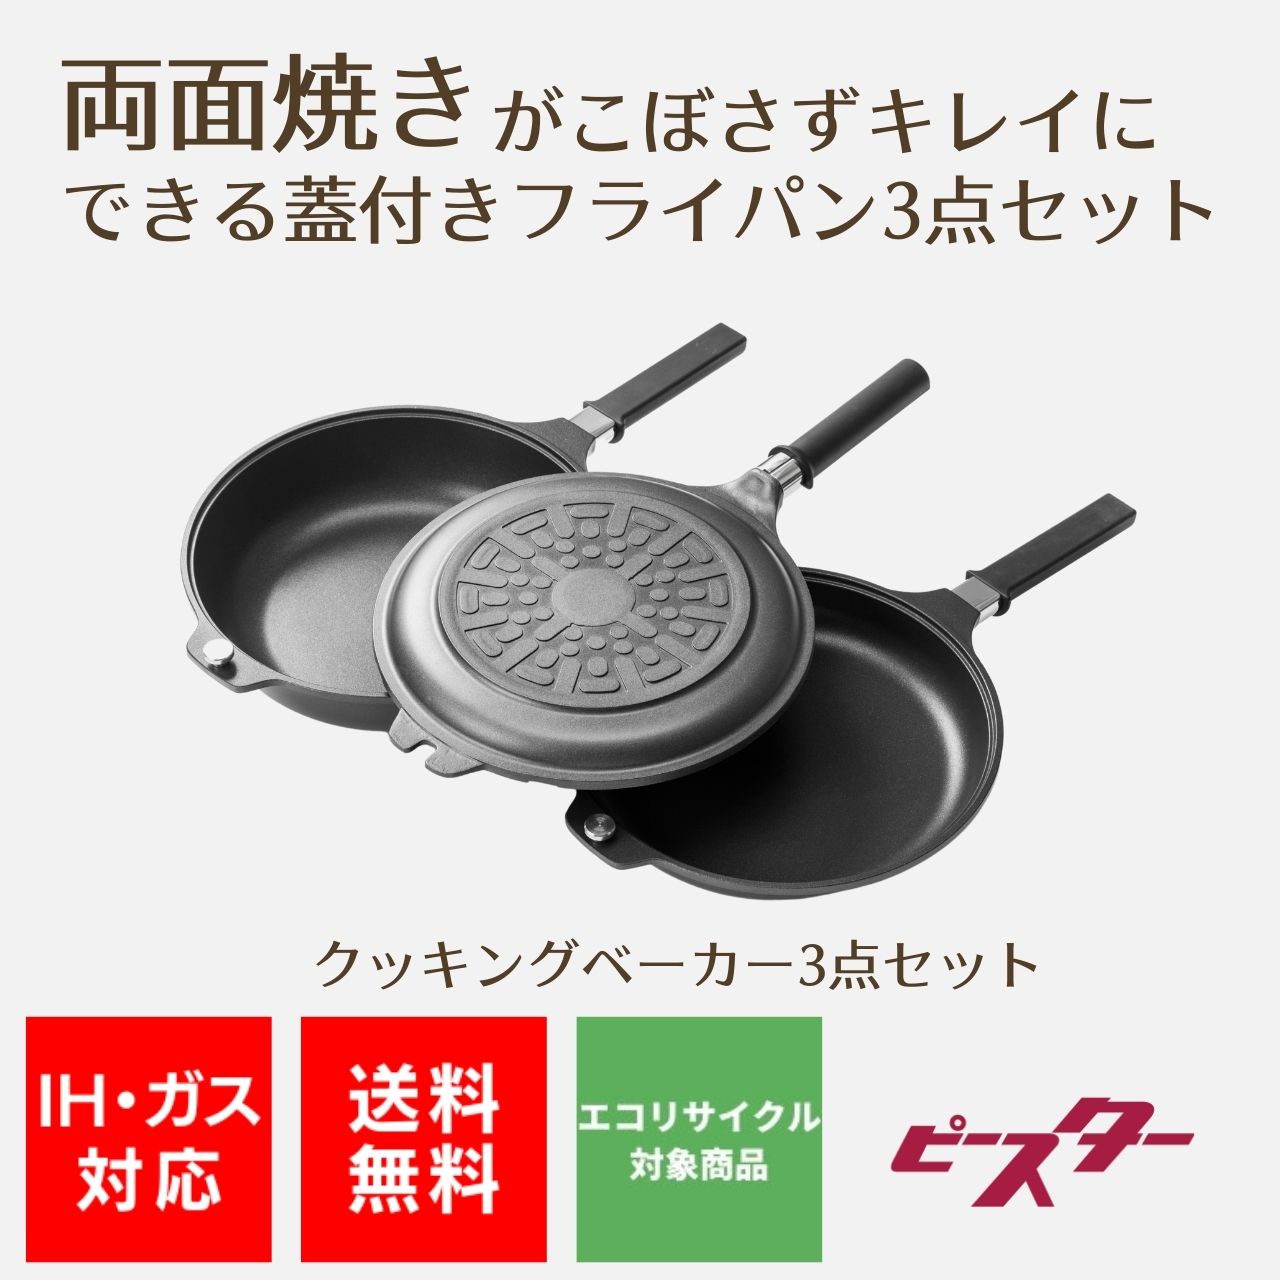 クッキングベーカー | 関西軽金属工業 | ピースターアルミ鋳物鍋 | ベストセラーの3点フルセット